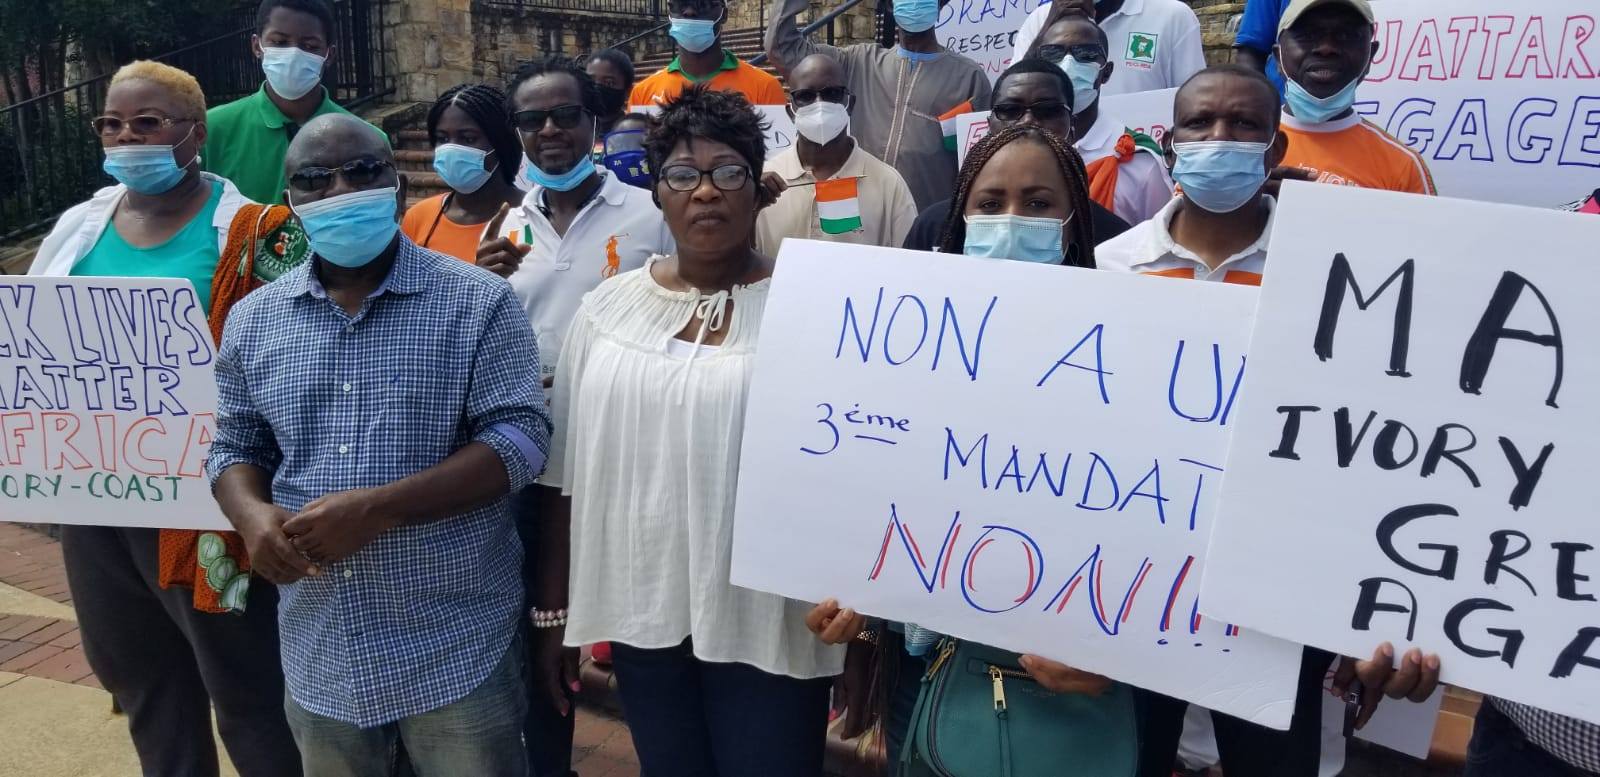 Les ivoiriens d’Atlanta rejettent en bloc le 3eme mandat de Ouattara.